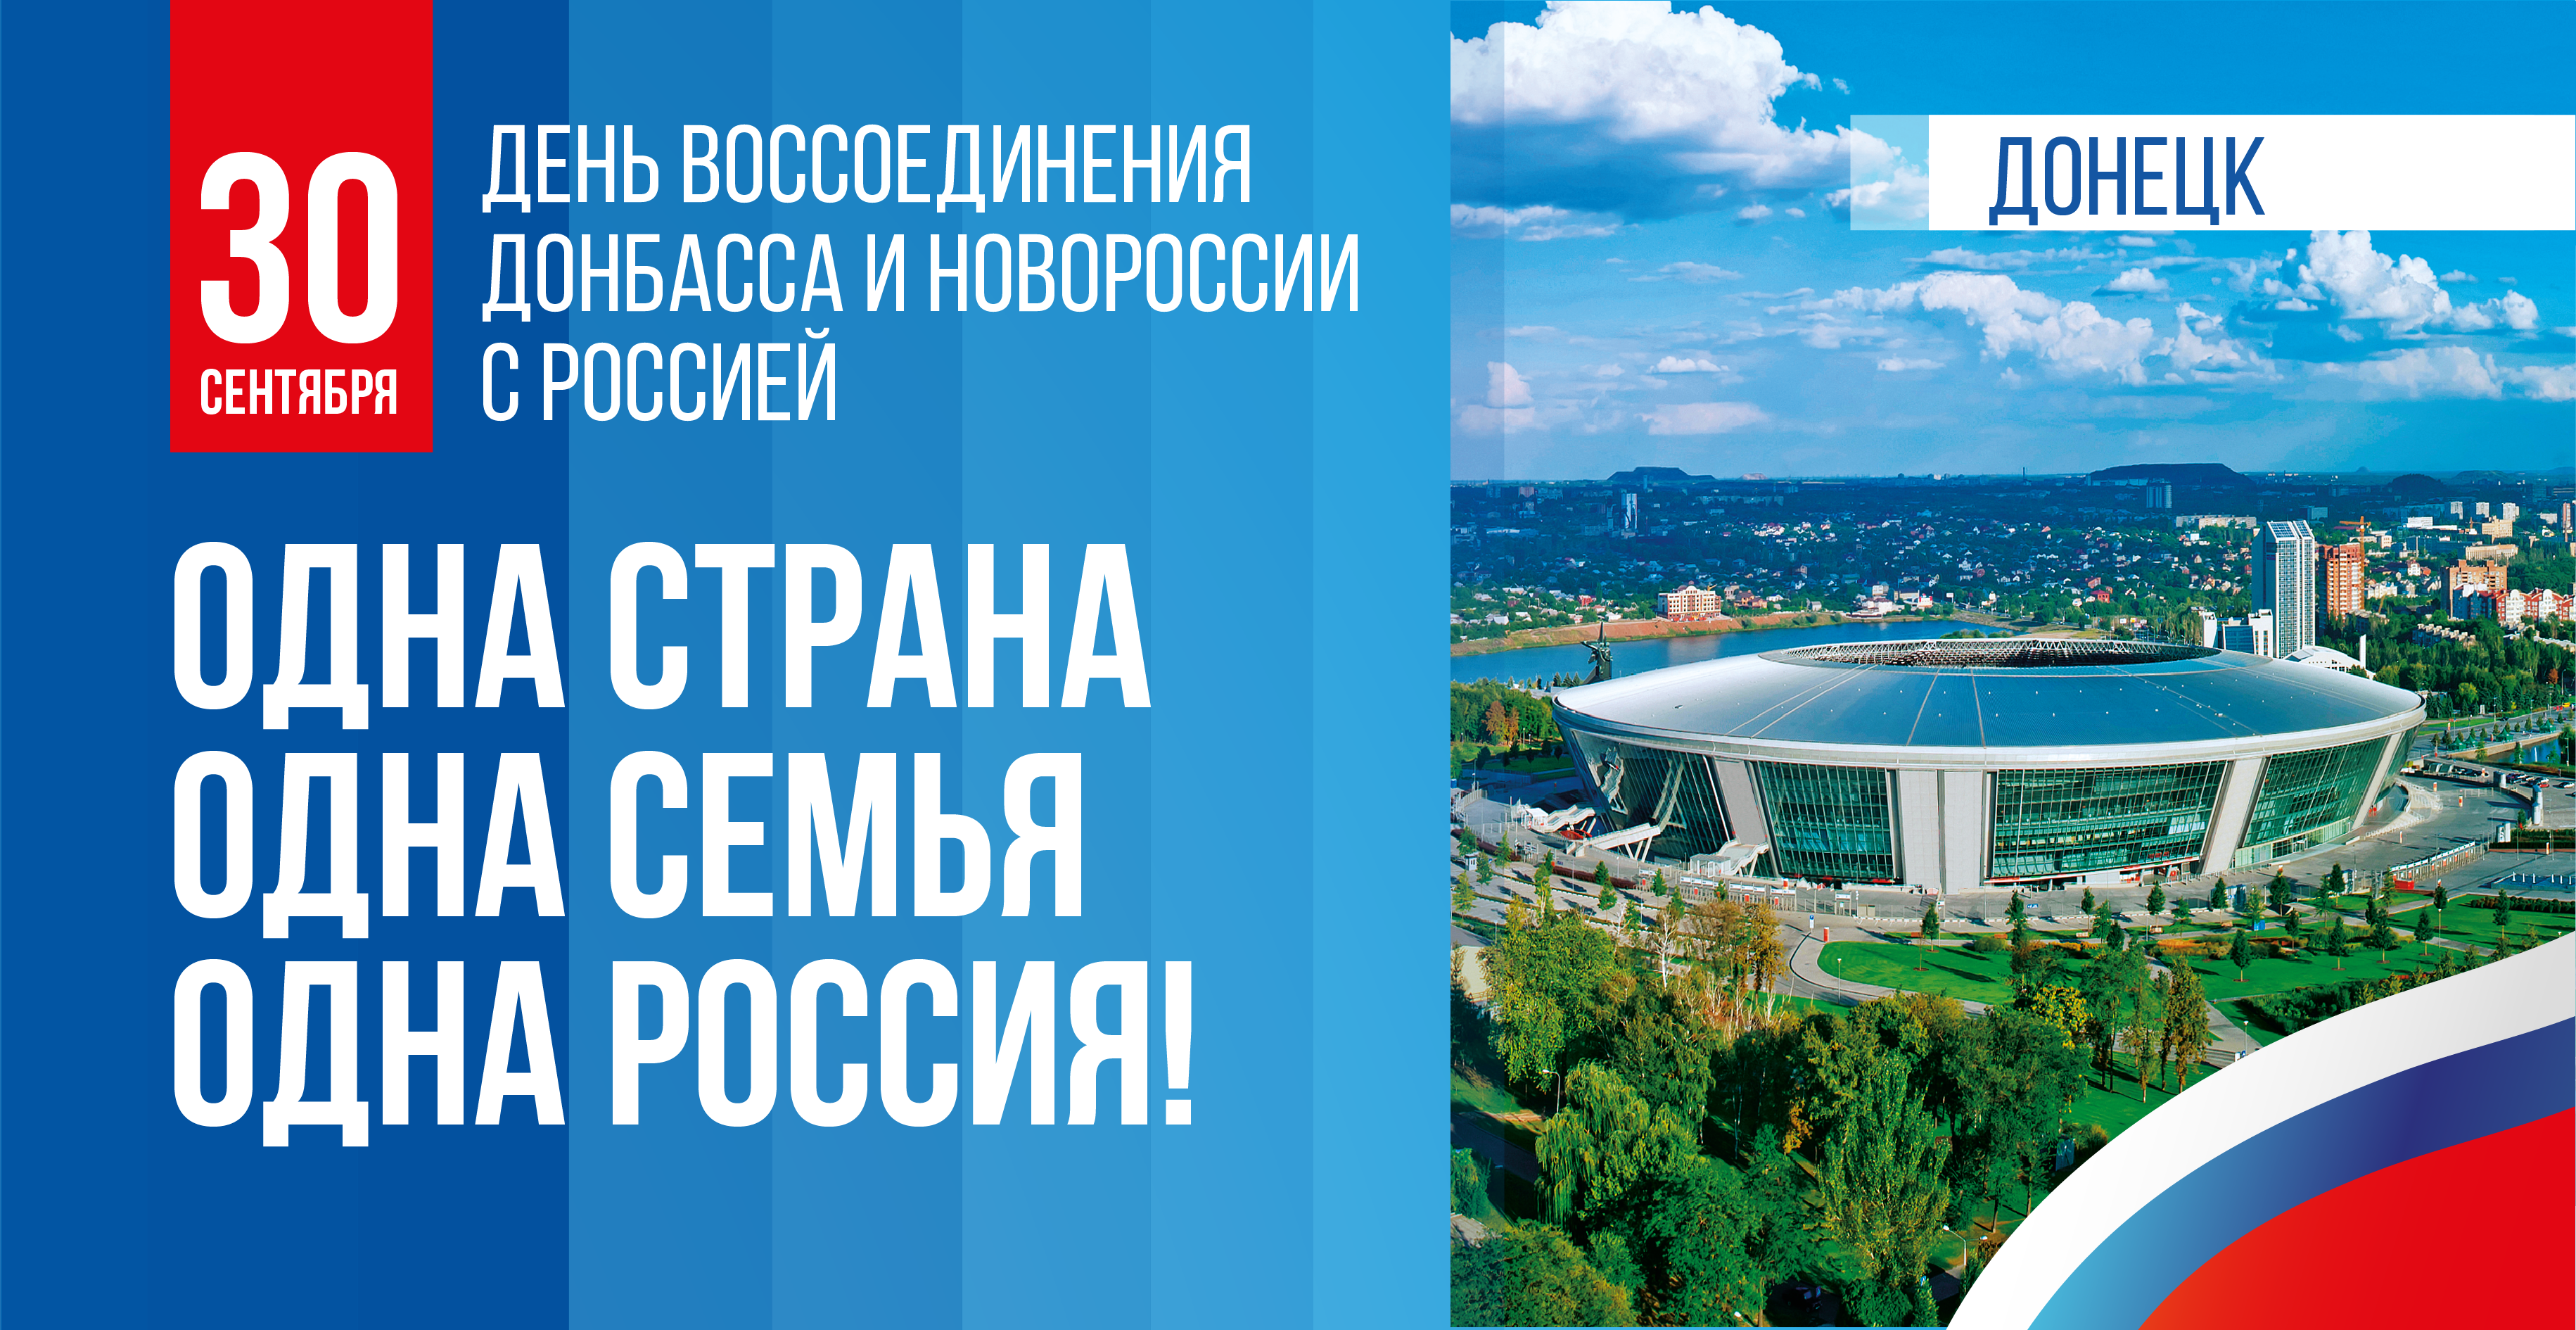 30 сентября День воссоединения Донбасса и Новороссии с Россией.